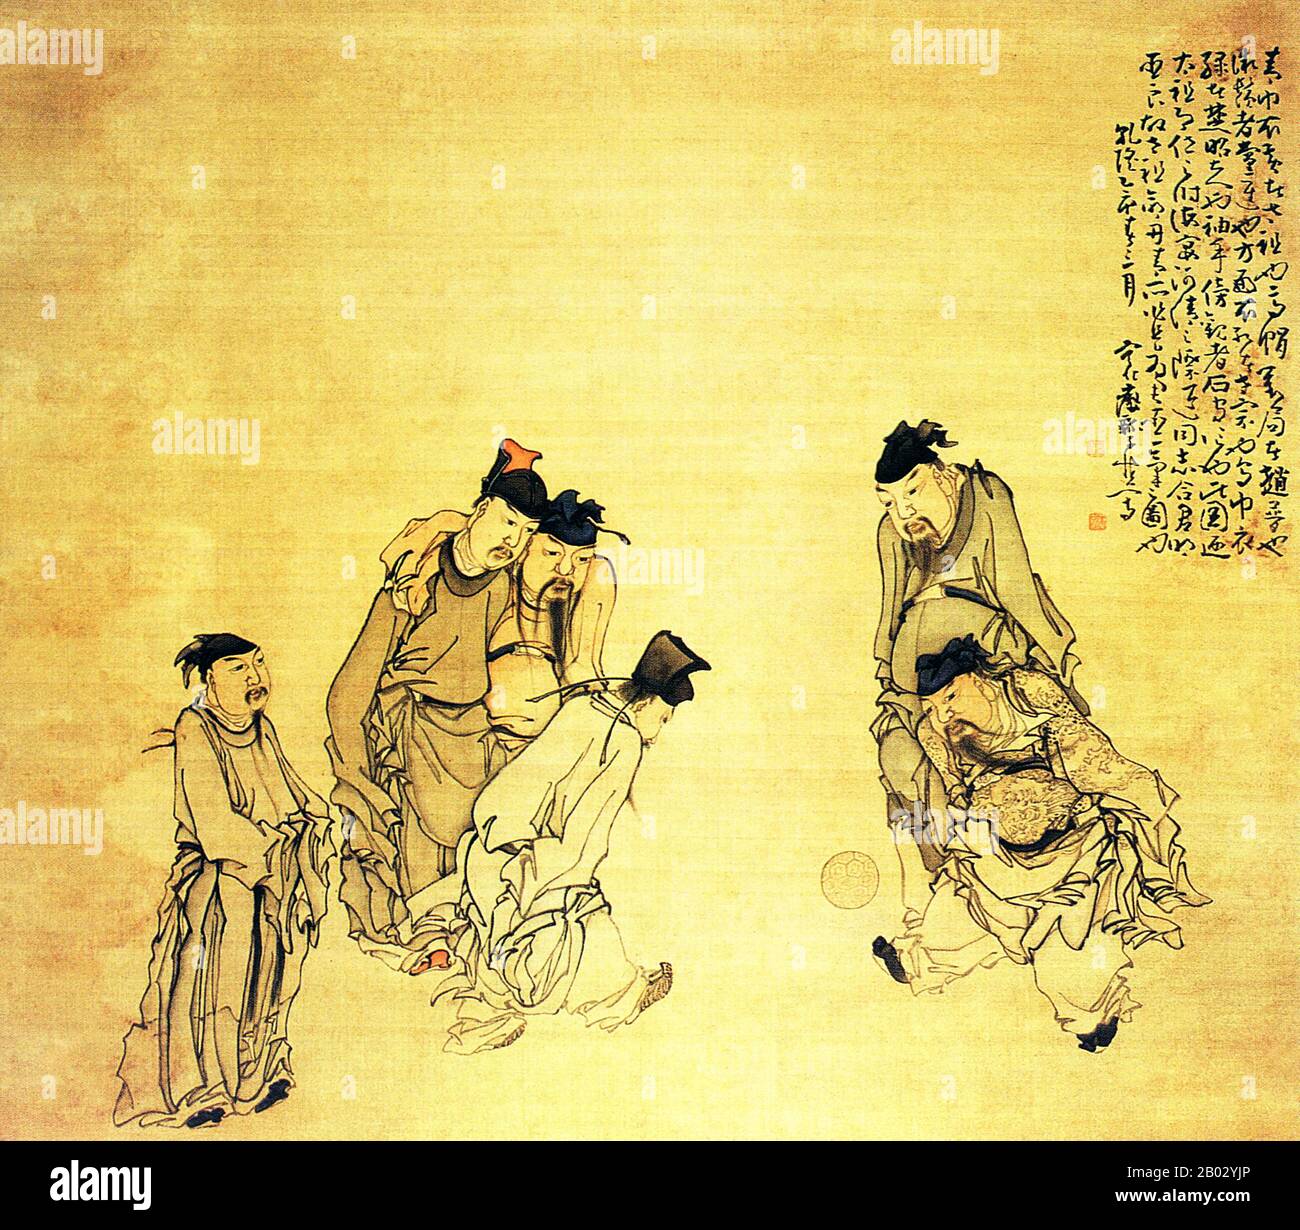 Huang Shen war ein chinesischer Maler während der Qing-Dynastie. Huang wurde in Ninghua, Provinz Fujian, in eine arme Familie geboren. Seine Ausbildung begann er unter dem Maler Shangguan Zhou. Im ersten Teil seiner Karriere zeichnete er sich bei kursiver Kalligraphie aus und favorisierte einen akribischen Stil nach dem Vorbild von Ni Zan. Er wurde bekannter als künstlerischer Innovator, der einer Der Acht Exzentriker von Yangzhou war. Als es um Gemälde von Menschen ging, bevorzugte er Bilder religiöser, historischer und gemeinsamer Menschen. Zu seinen bekannteren Werken gehören Der Betrunkene Mönch und der Hirte Su Wu. Stockfoto